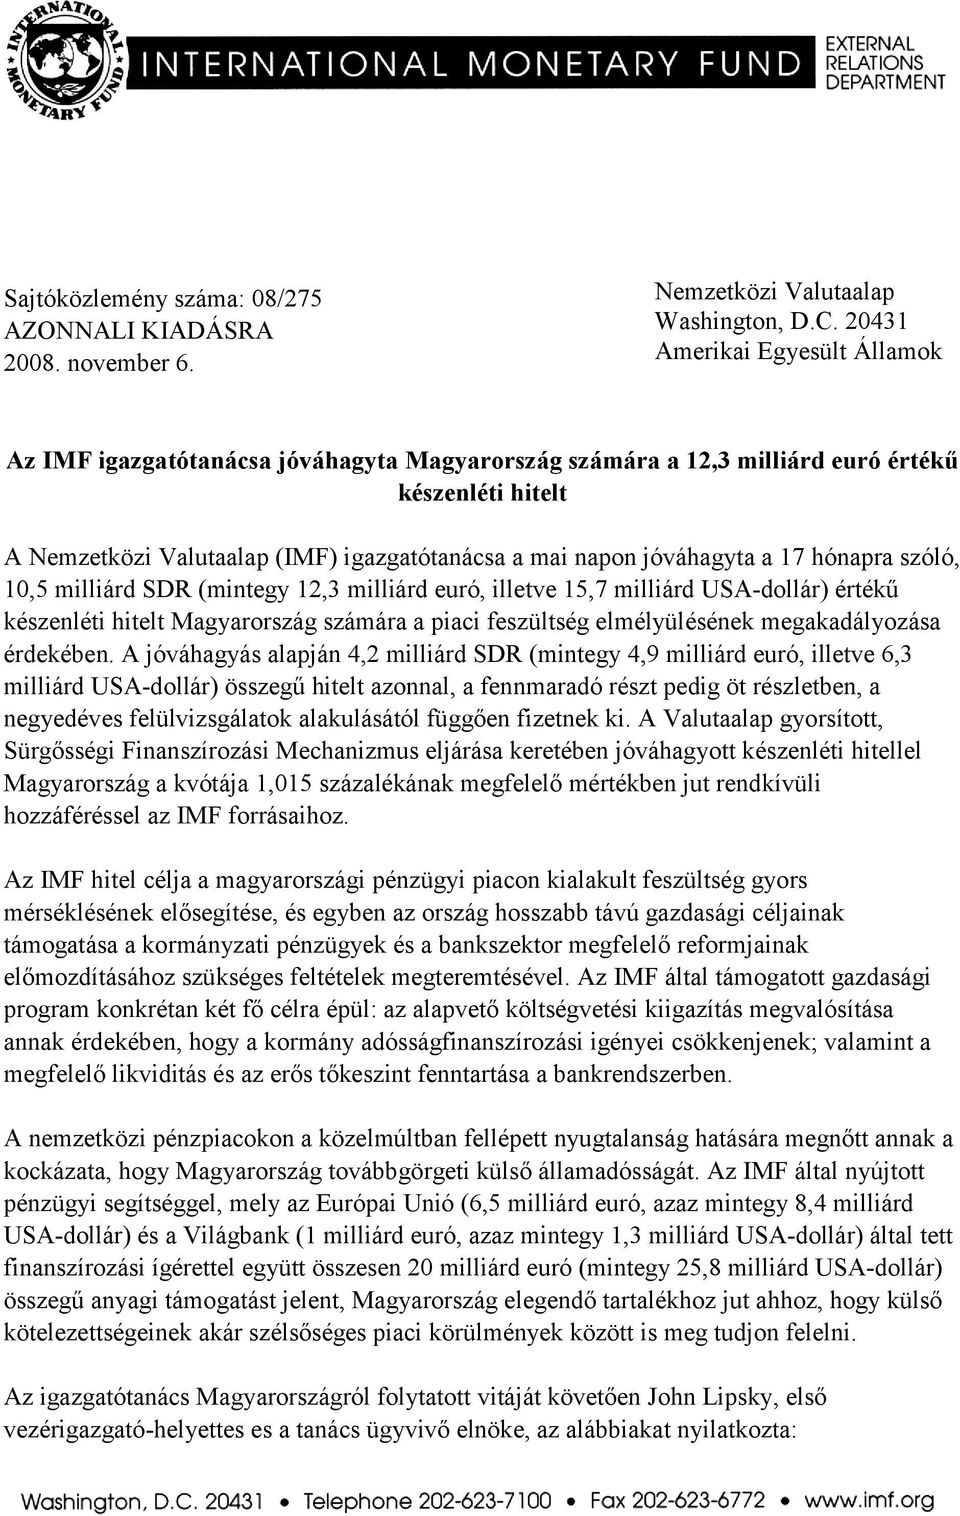 jóváhagyta a 17 hónapra szóló, 10,5 milliárd SDR (mintegy 12,3 milliárd euró, illetve 15,7 milliárd USA-dollár) értékű készenléti hitelt Magyarország számára a piaci feszültség elmélyülésének